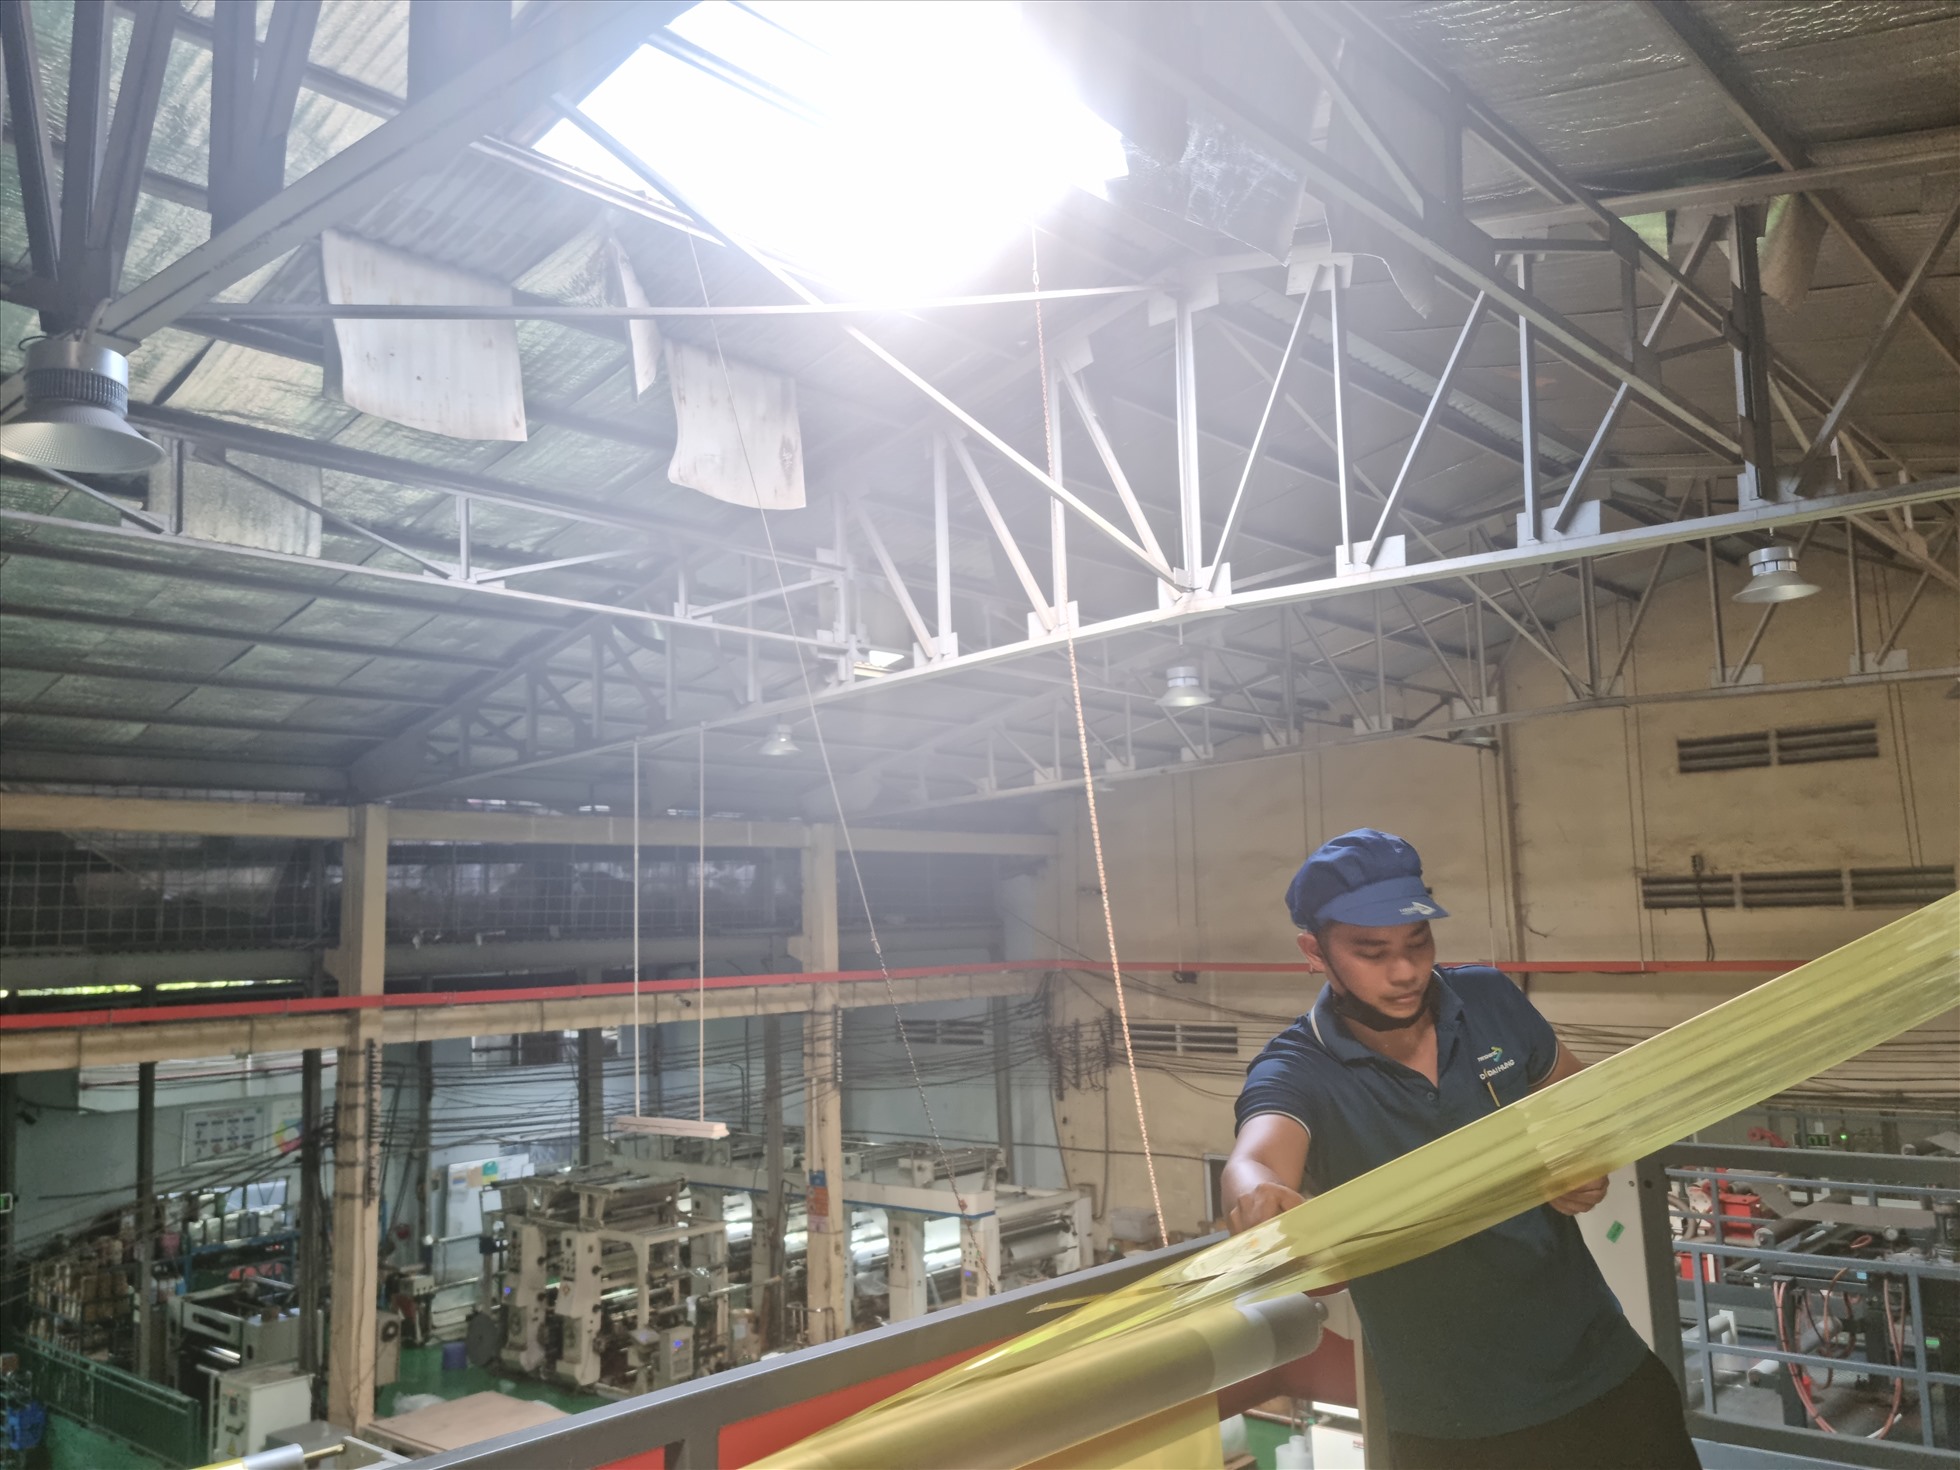 Doanh nghiệp tại TP Hồ Chí Minh trổ khoảng không trên mái nhà xưởng sử dụng ánh sáng, gió tự nhiên để tiết kiệm điện. Ảnh: Nam Dương